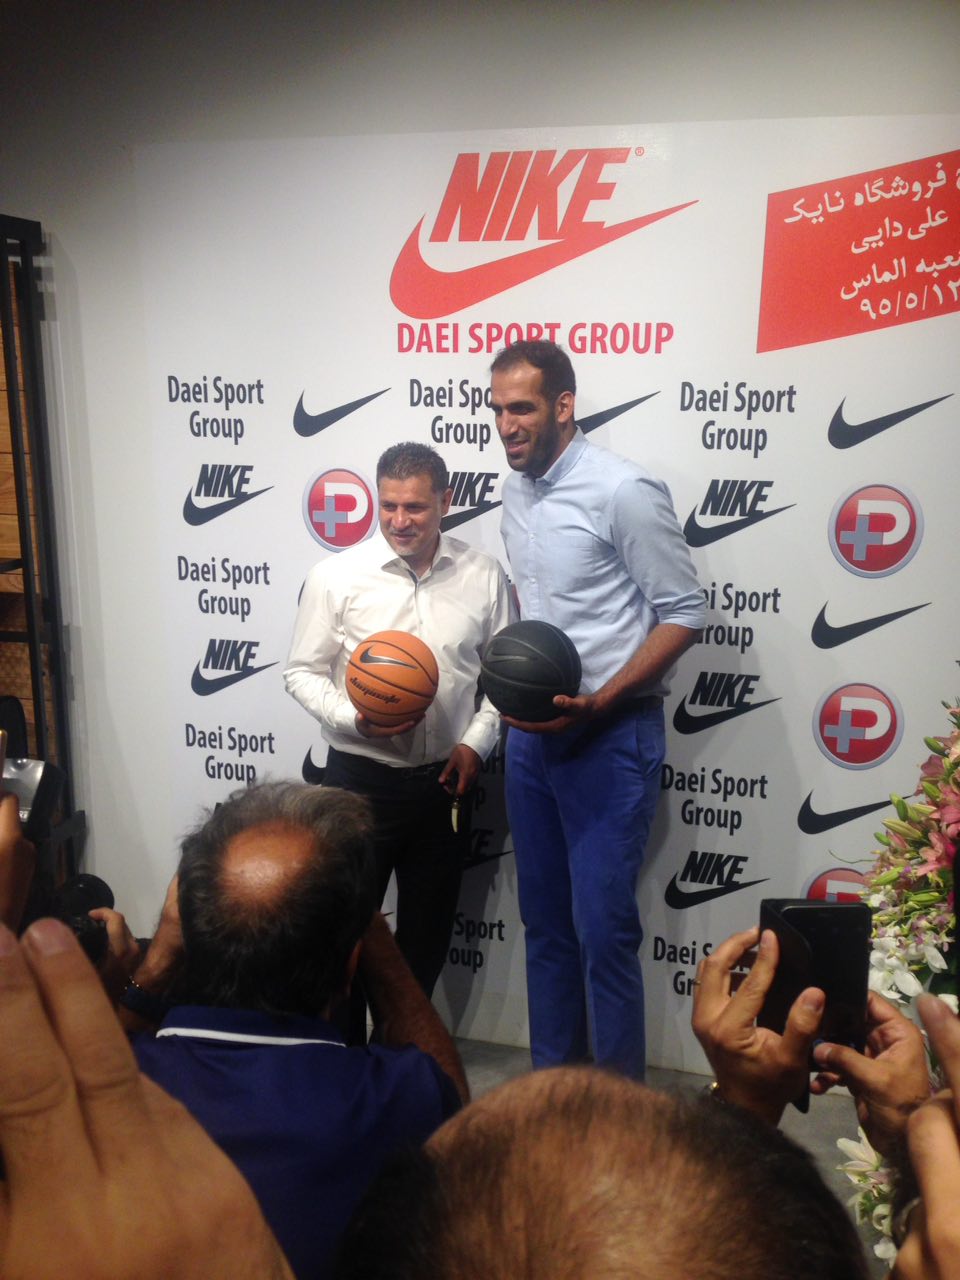 ستاره بسکتبال در افتتاحیه فروشگاه جدید دایی